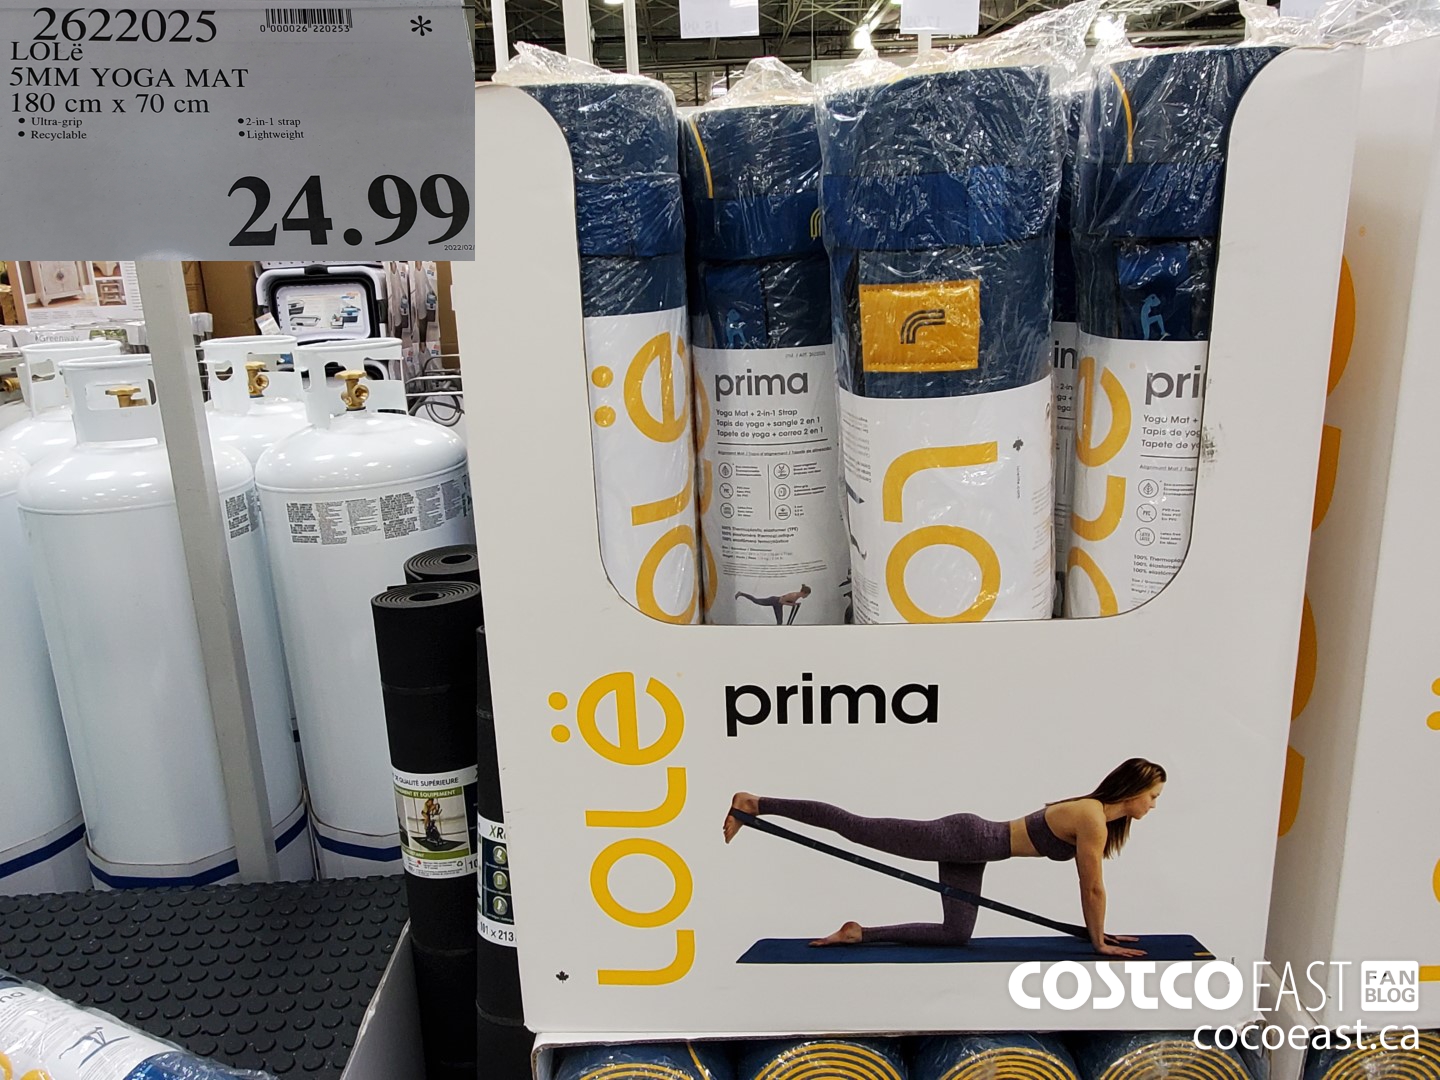 Yoga Mat - Lolë Prima